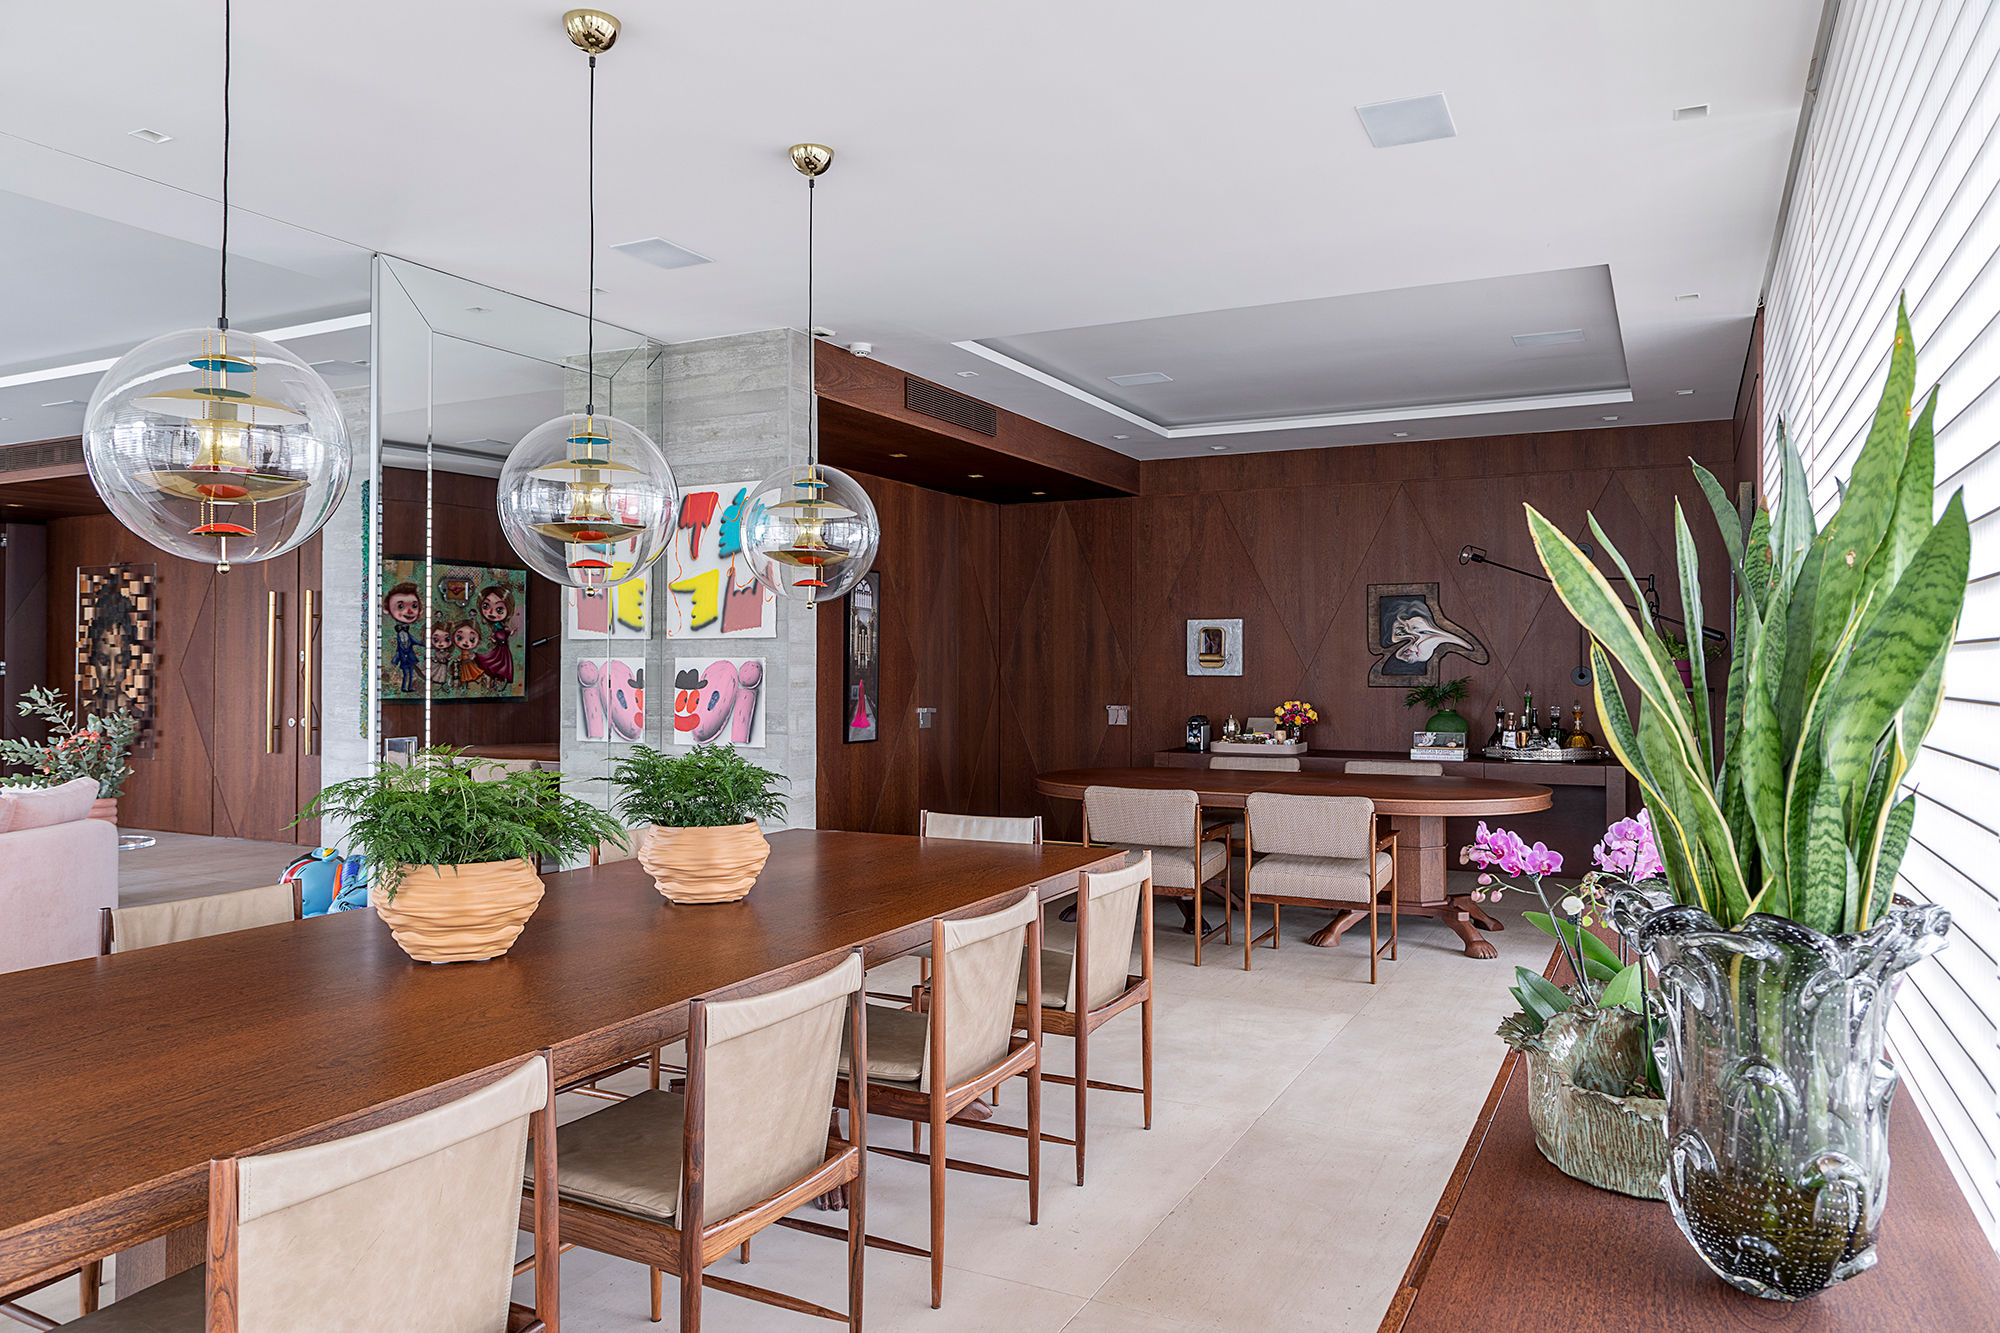 Apê descolado de 632 m² tem sofás coloridos e adega para mil garrafas. Projeto de Ana Weege. Na foto, varanda gourmet com persianas e pendentes, Sala de jantar com parede de madeira.